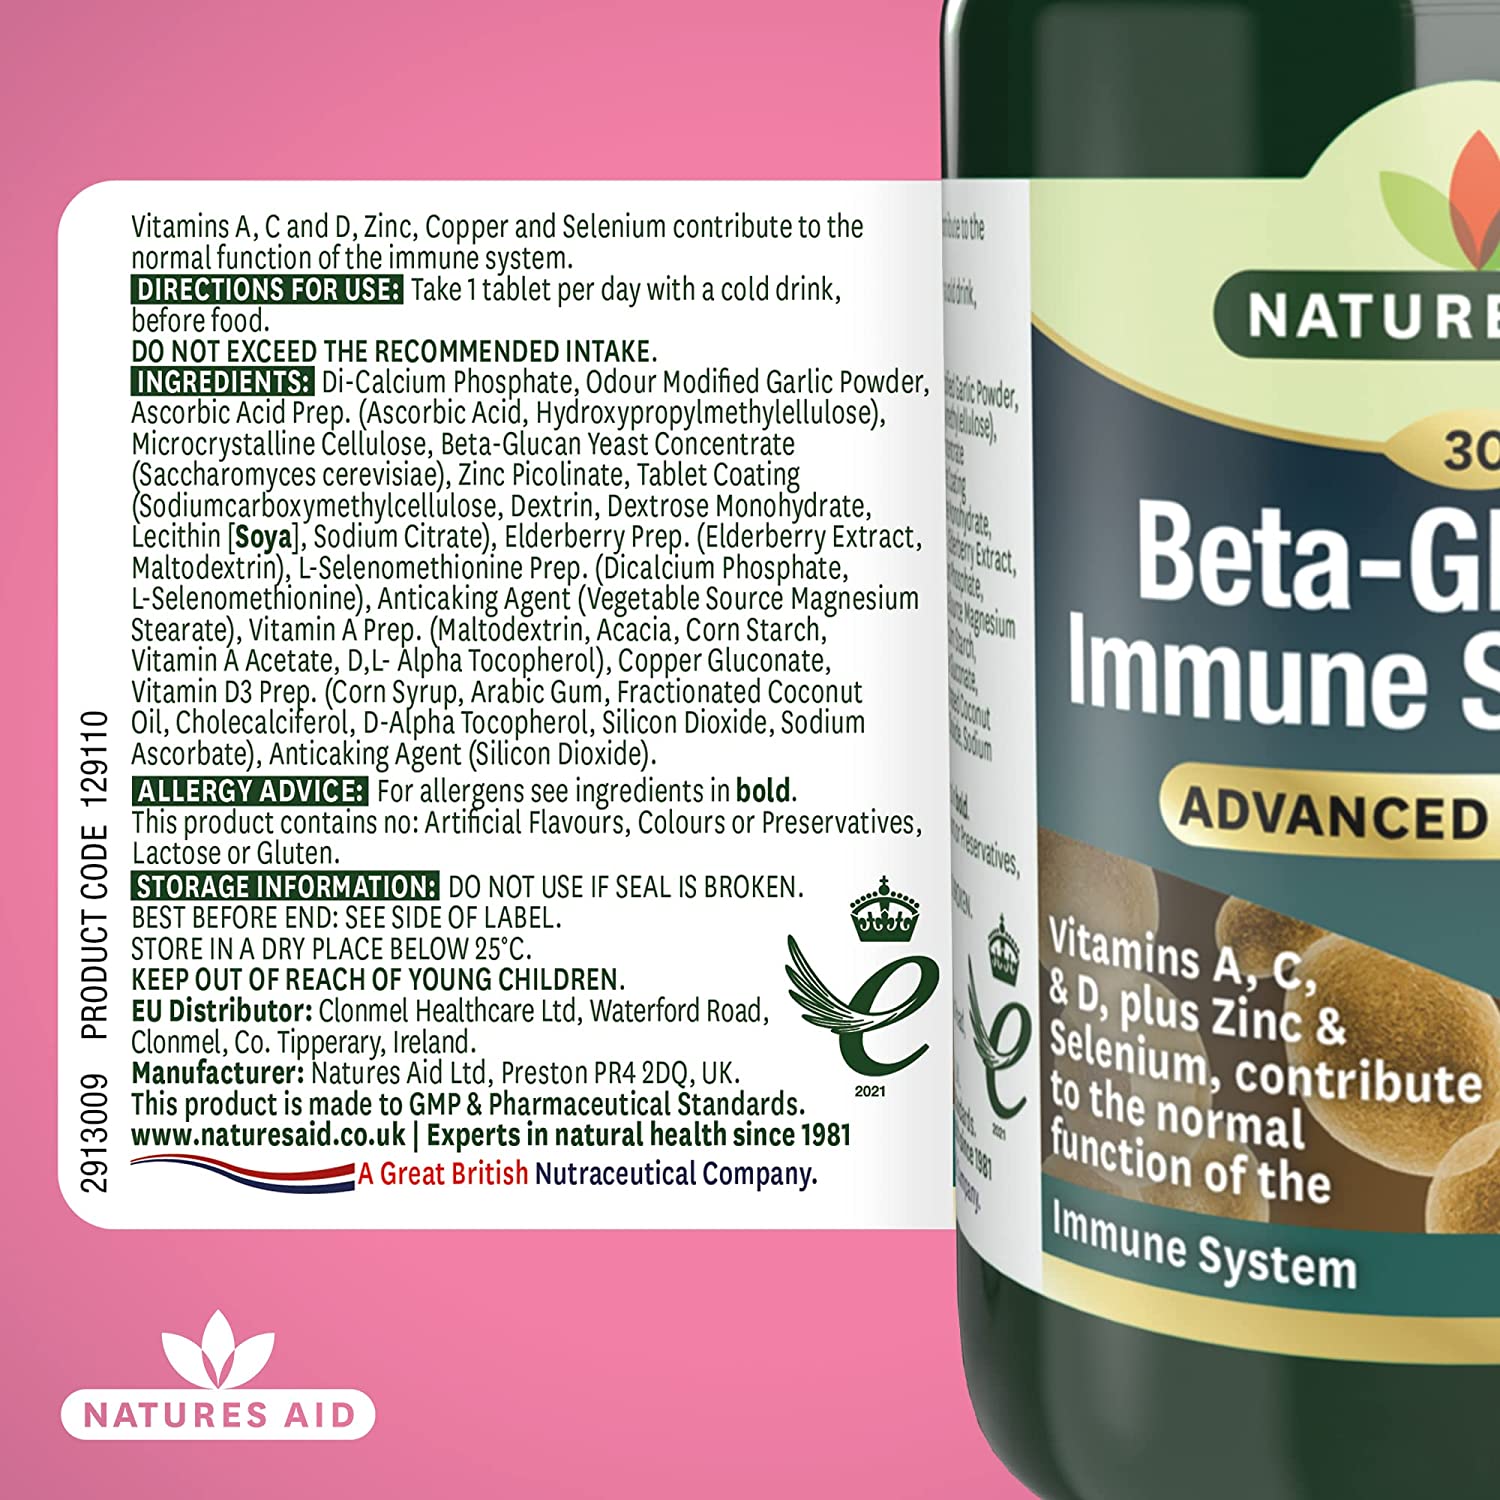 Beta-Glucans Immune Support + 30 Capsules